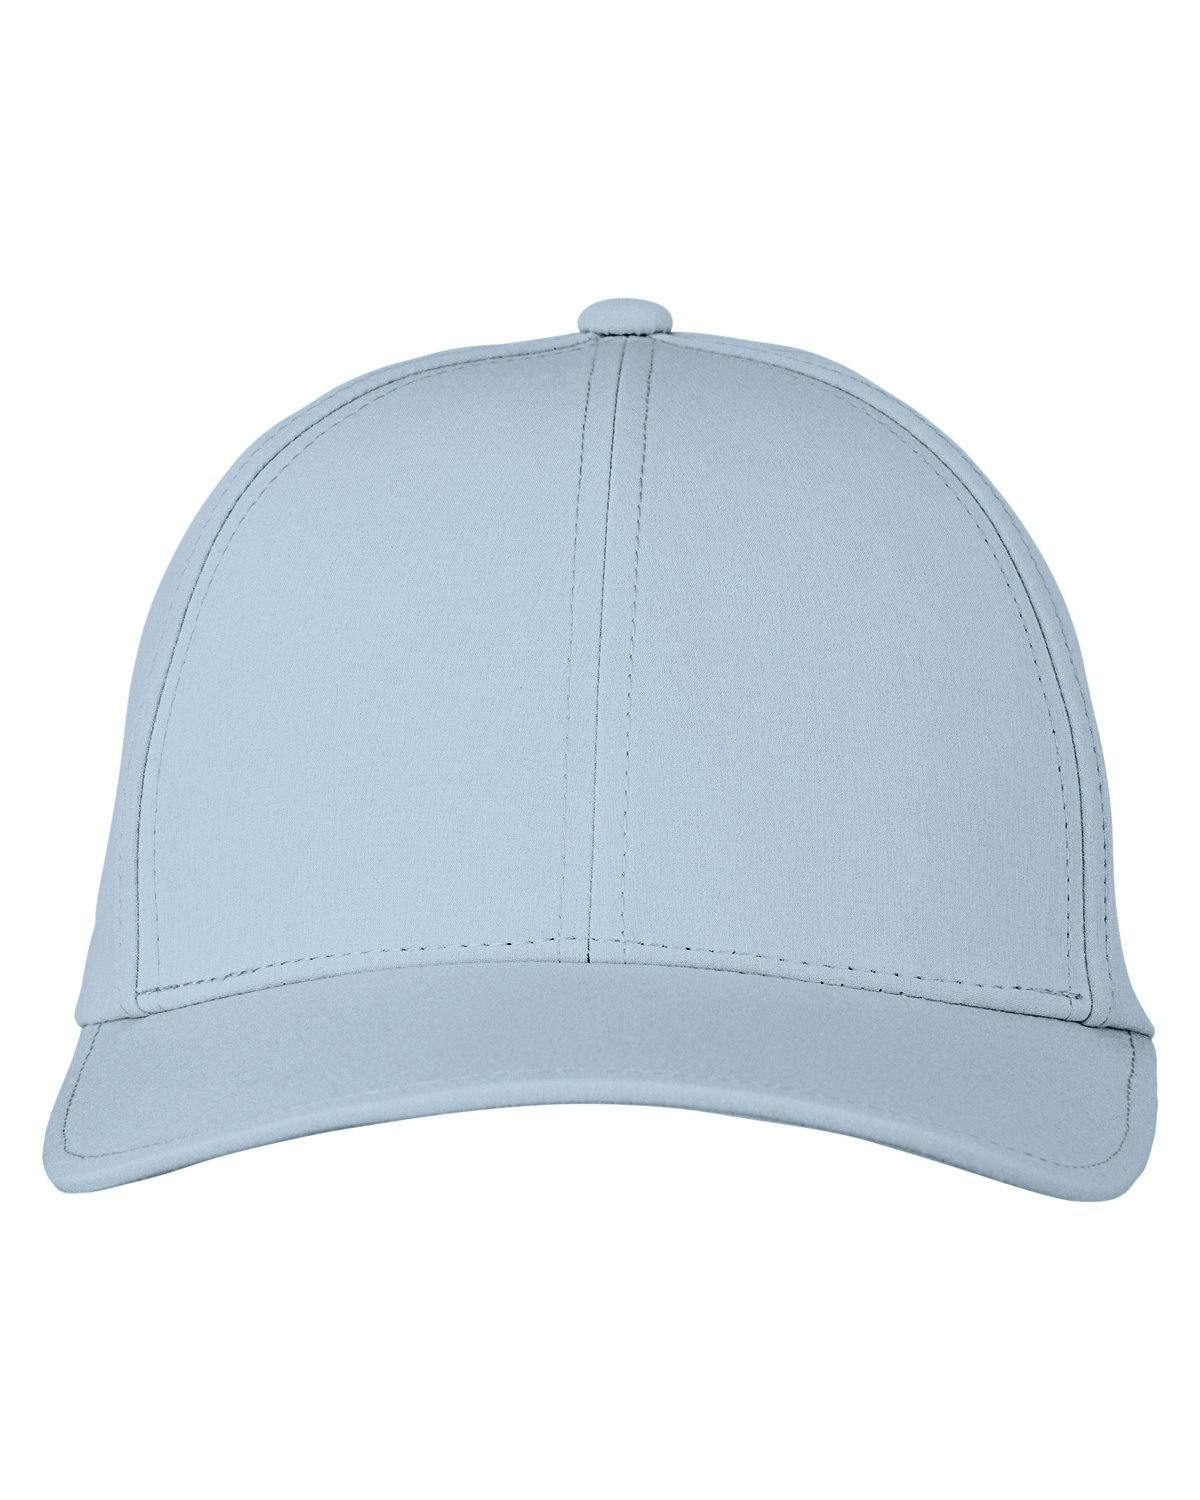 Image for Men's Delta Hat